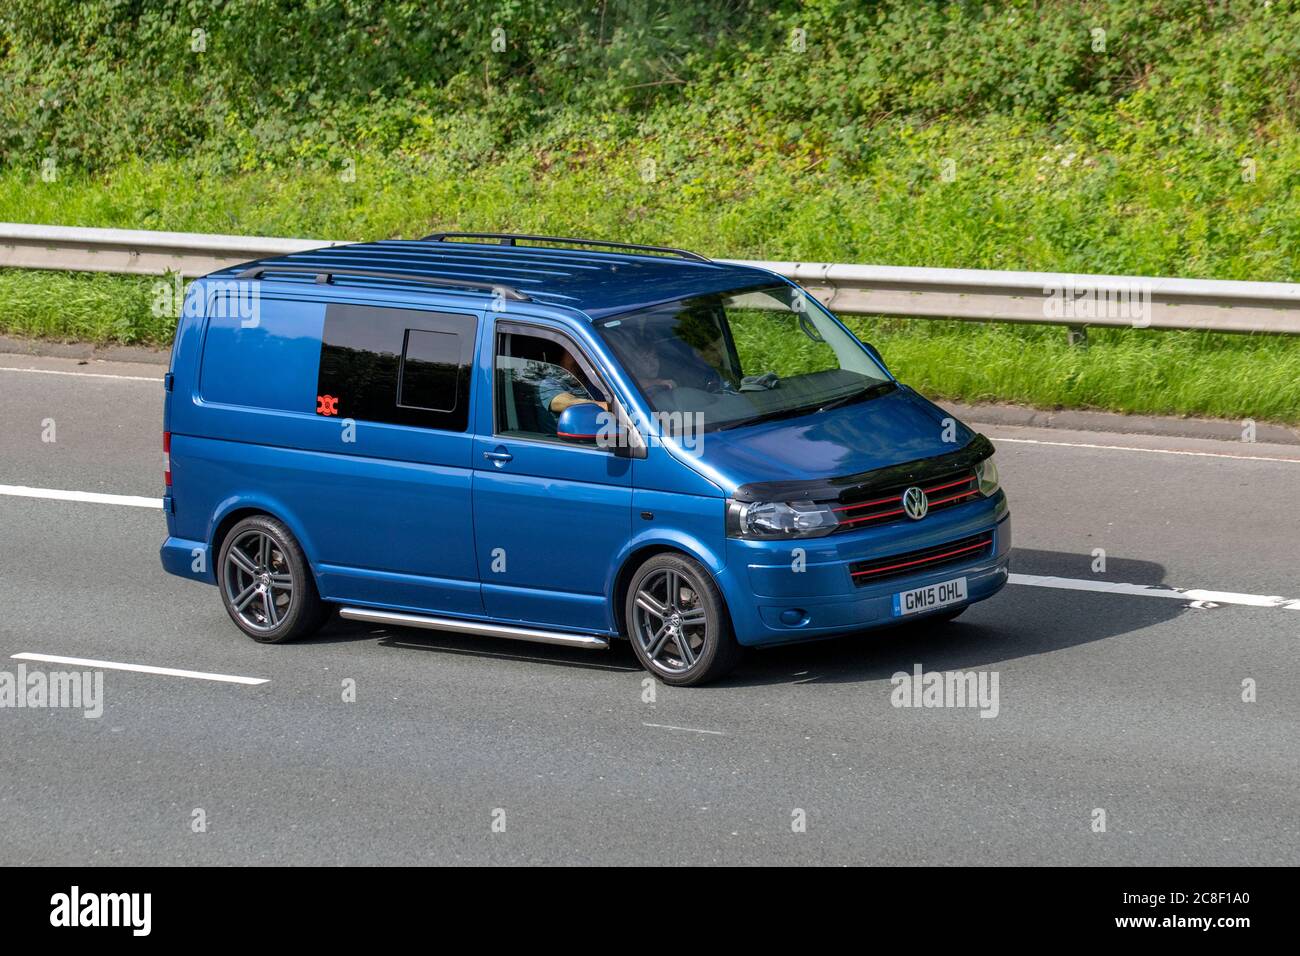 Klemme strand Uendelighed Volkswagen Transporter Vans High Resolution Stock Photography and Images -  Alamy